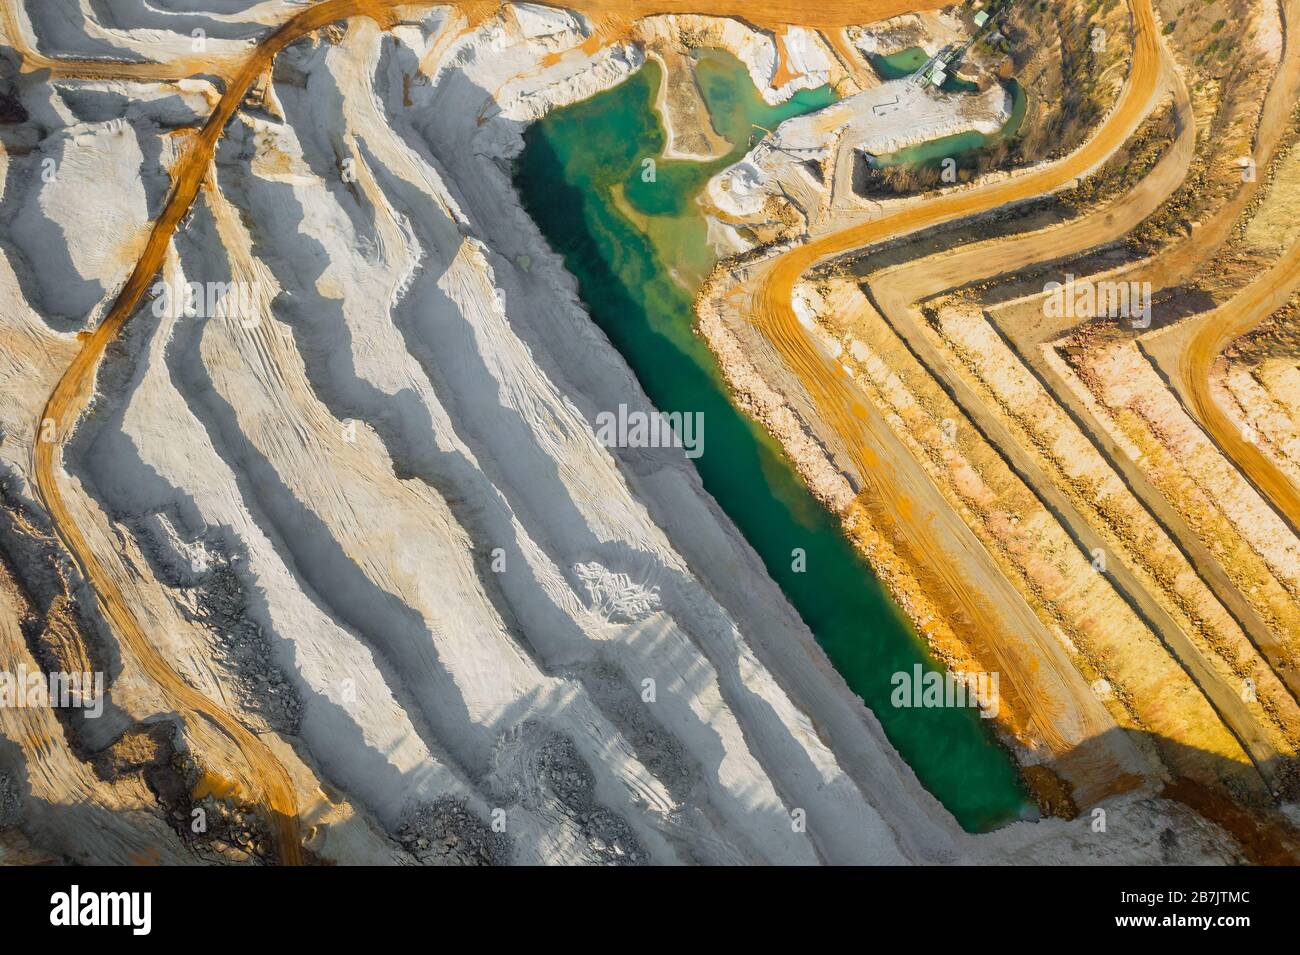 Draufsicht auf einen Sandbruch. Arial Blick auf einen Abbau von natürlichen Ressourcen oder Erz. Grüner Fluss trennt weiße und gelbe Sandufer. Stockfoto